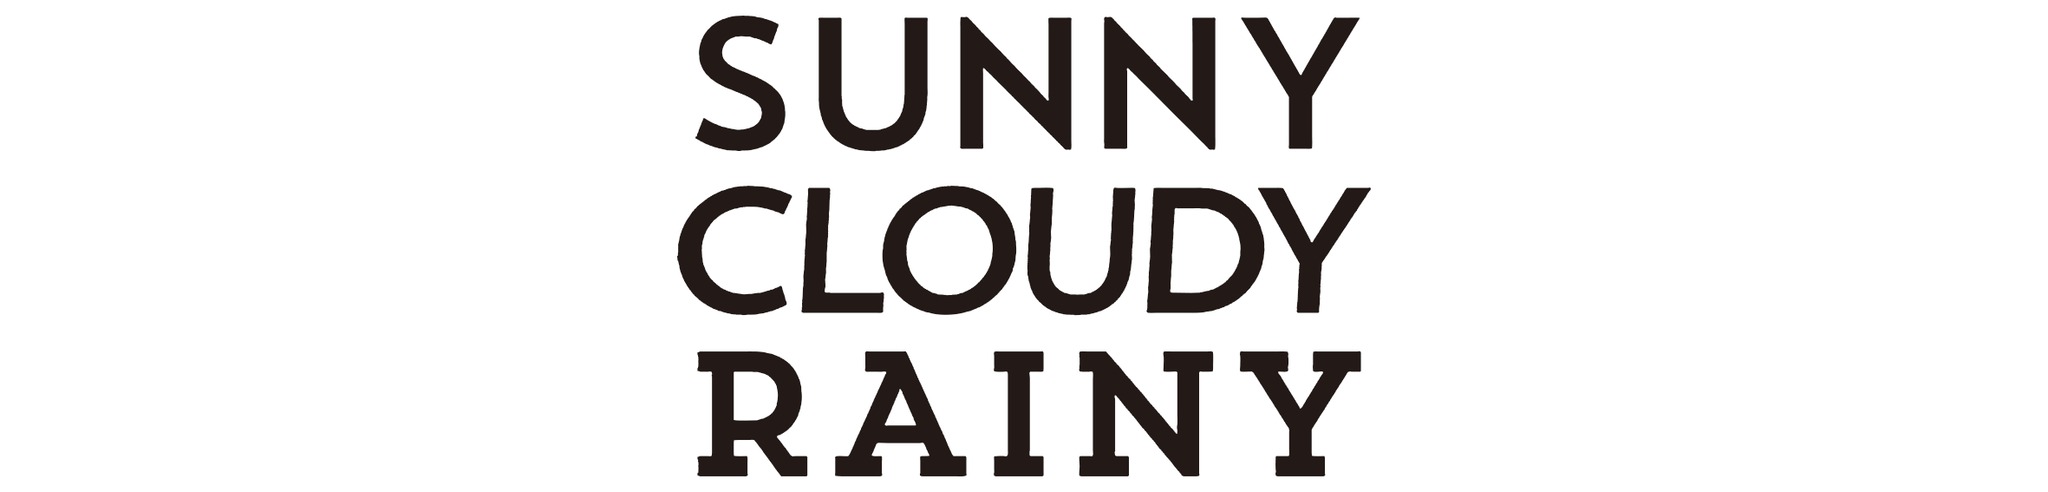 SUNNY CLOUDY RAINY